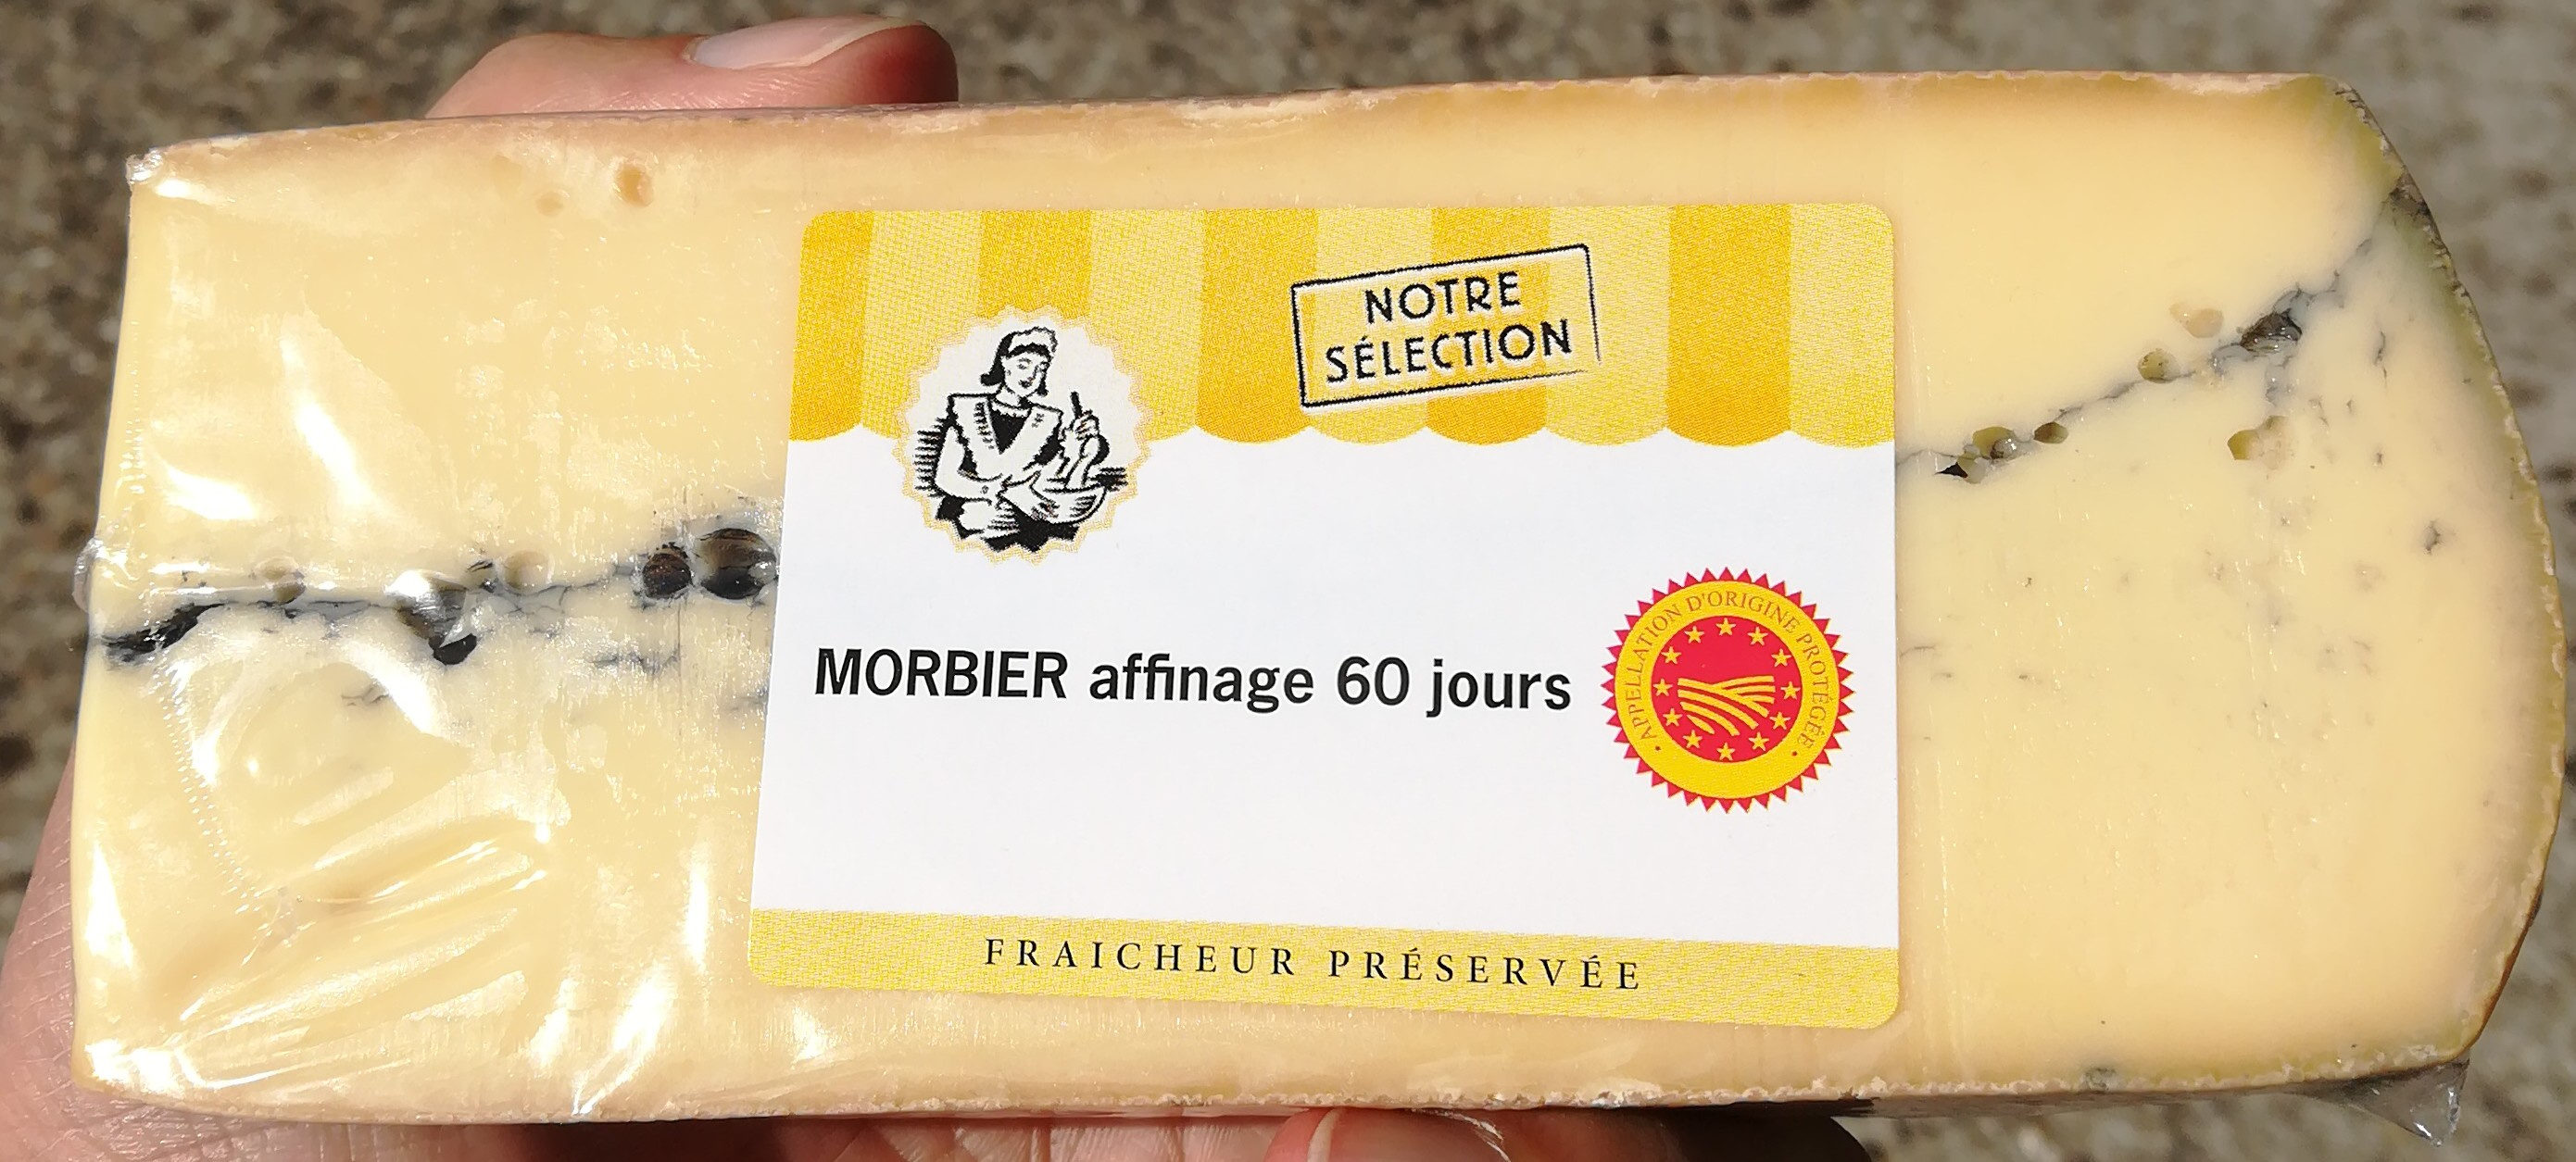 Morbier affinage 60 jours - Product - fr